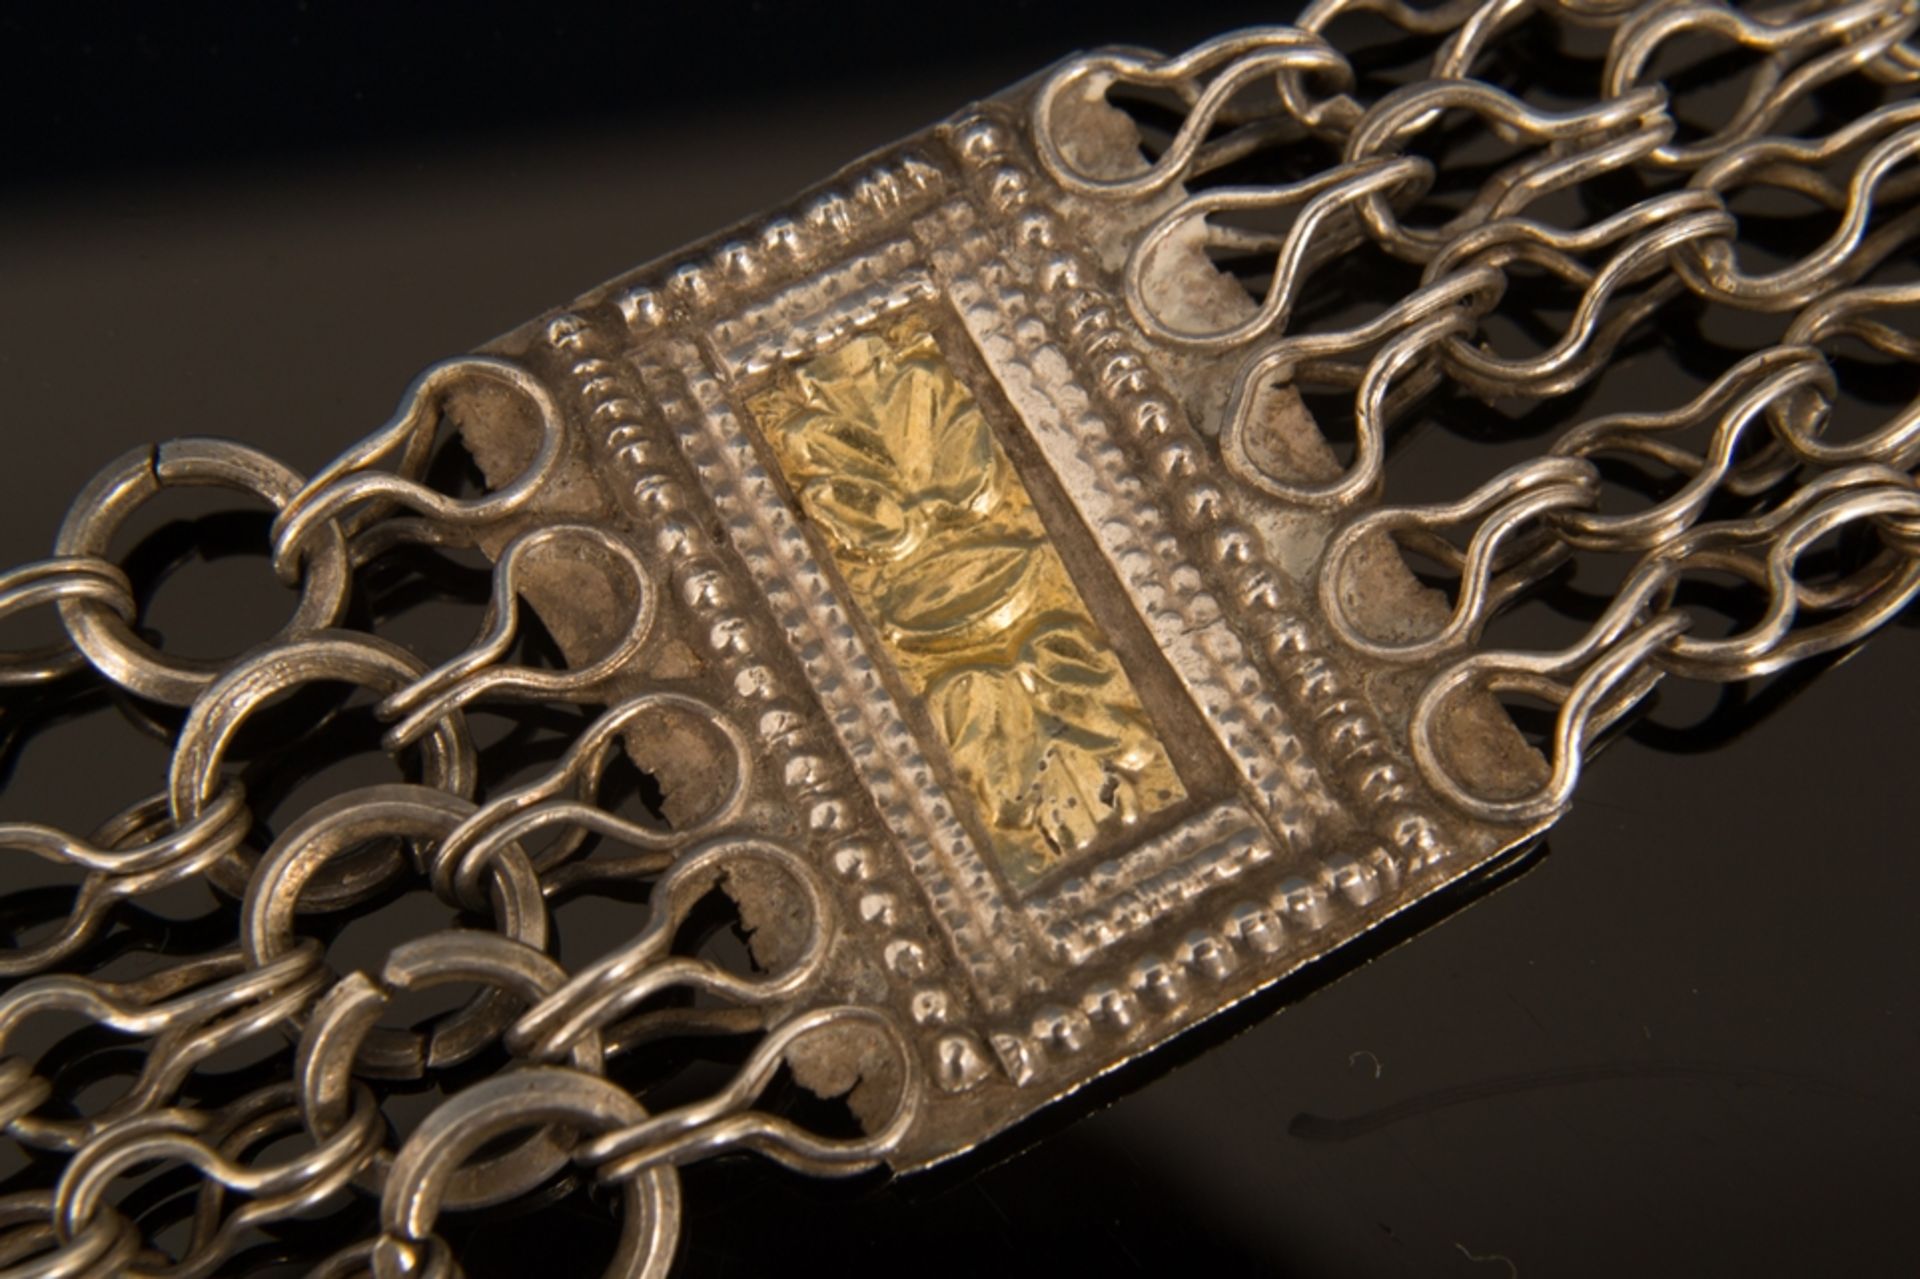 Gliederarmband aus dem Oman. Silber, teilweise vergoldet, ungestempelt. Länge ca. 35 cm. - Bild 6 aus 11